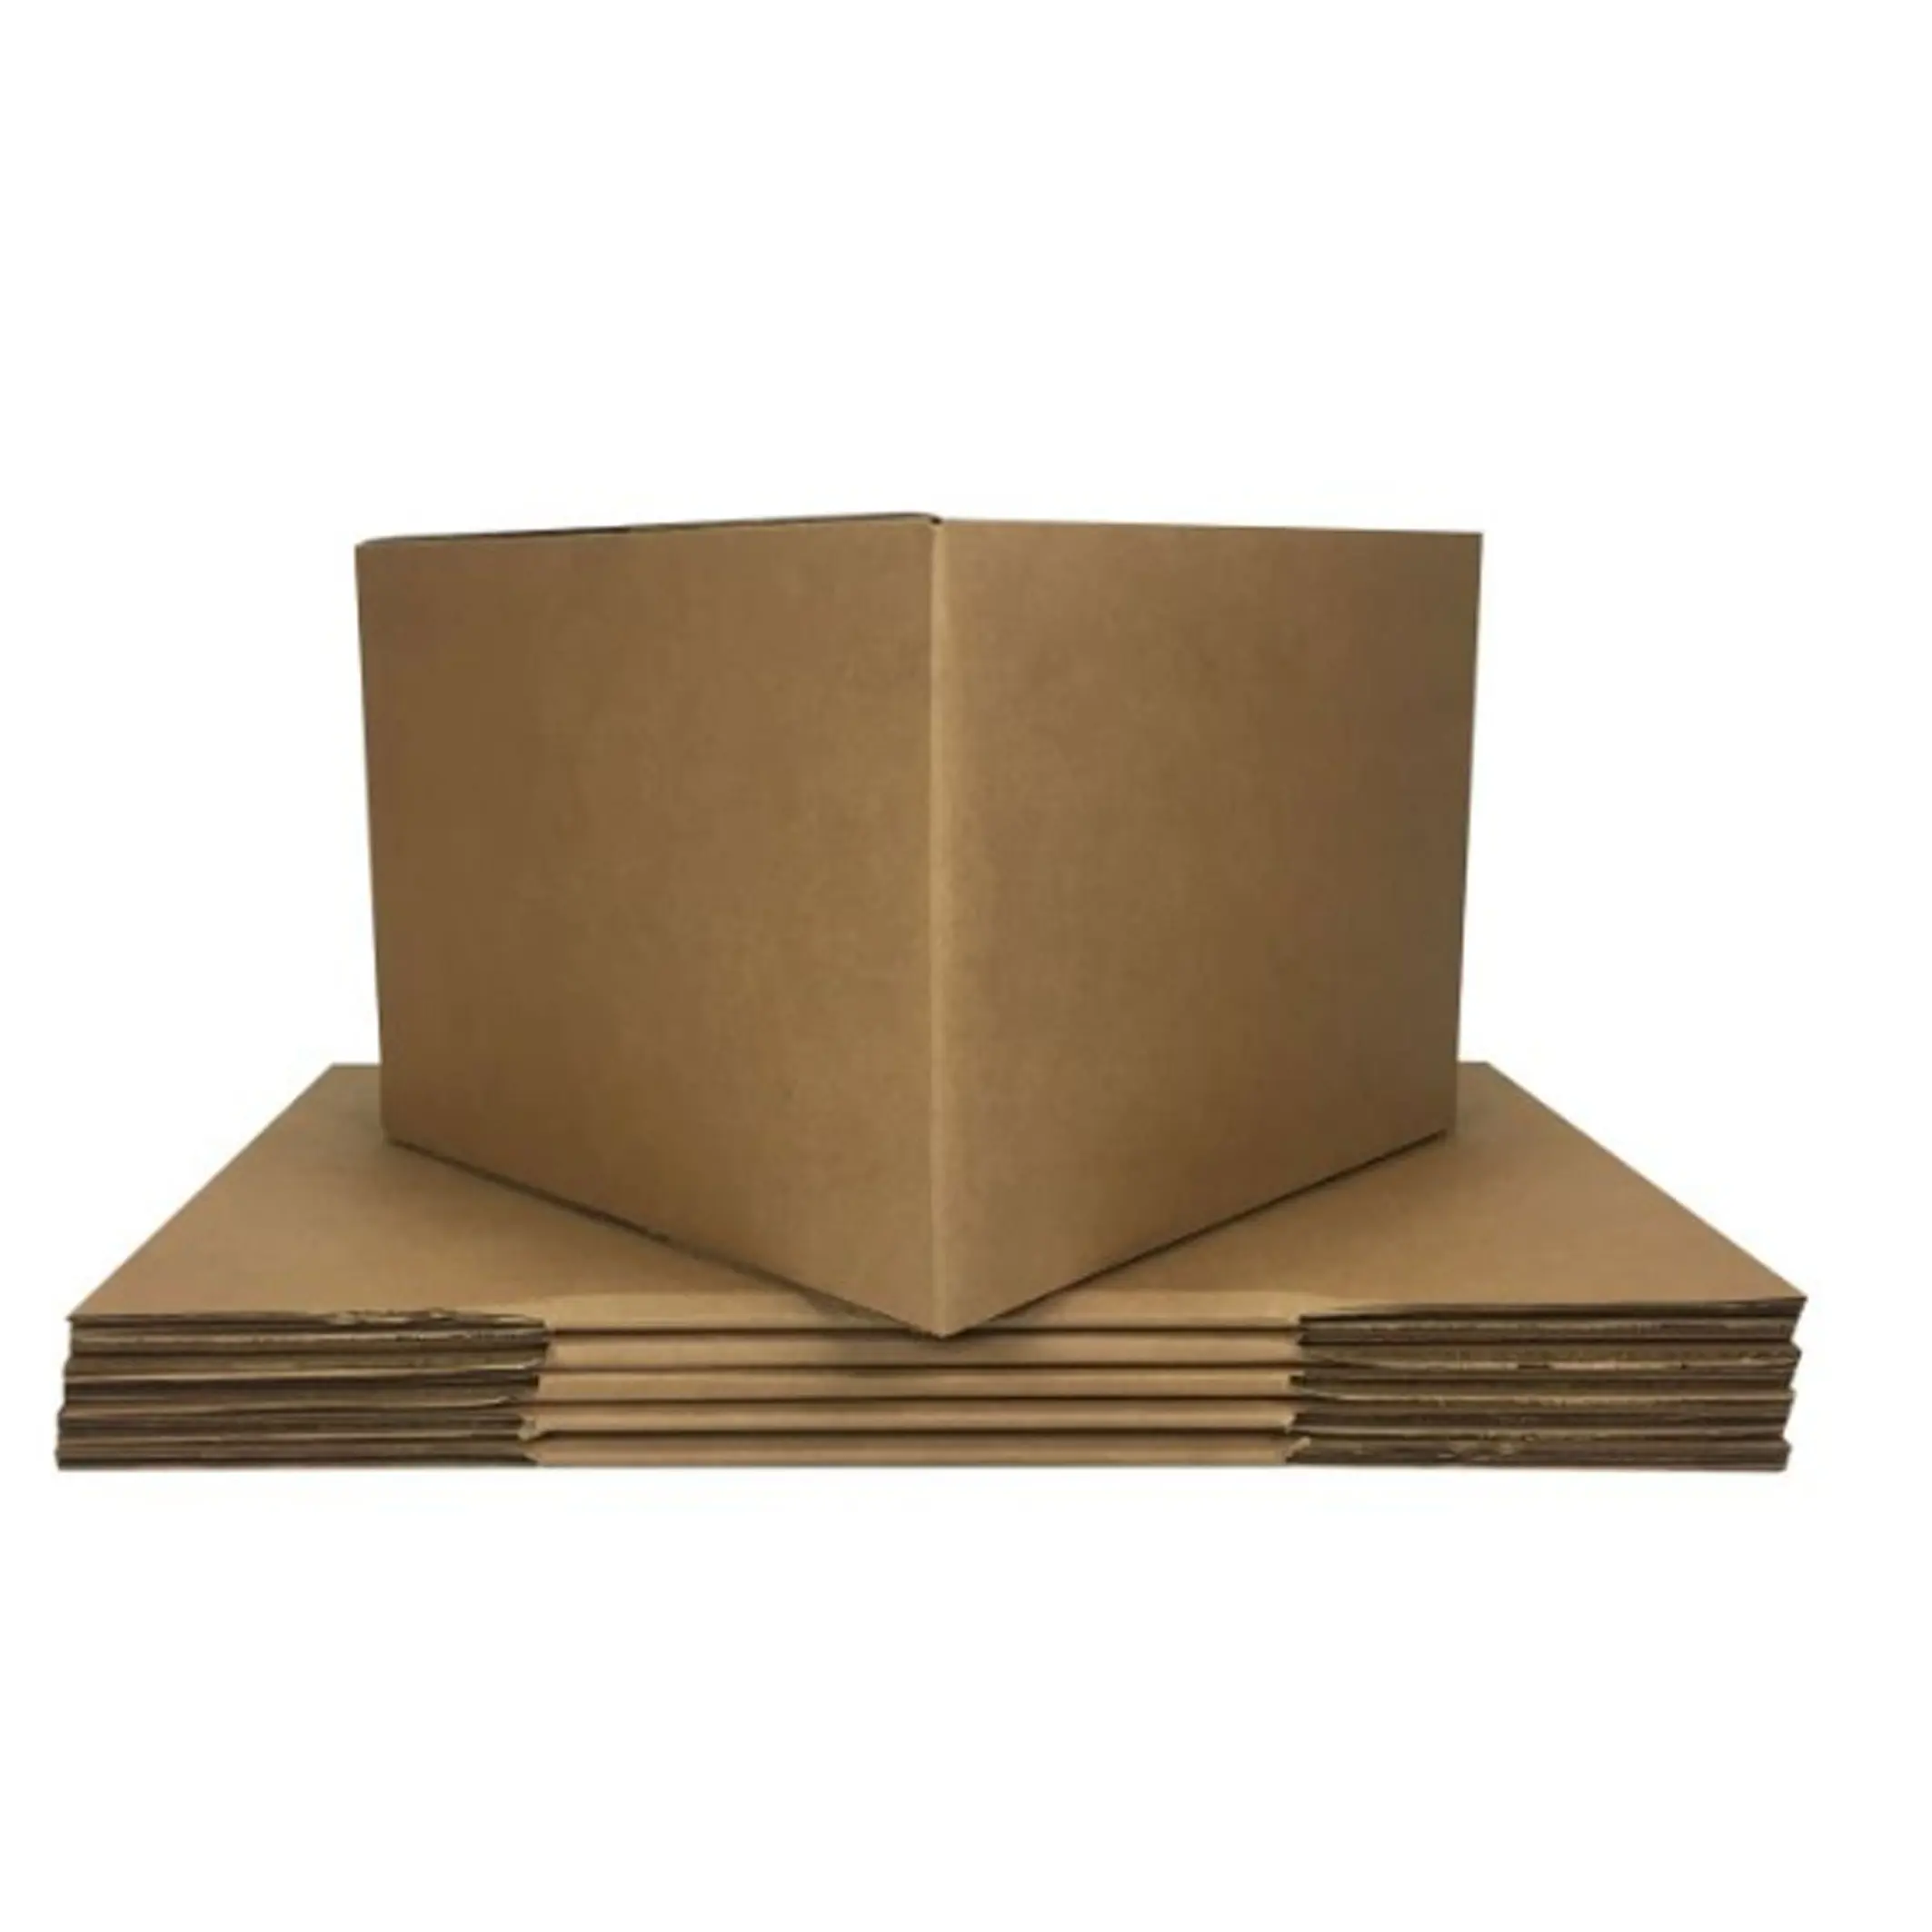 Heavy-duty grande logotipo impresso caixas de transporte de embalagem caixa de papelão caixa movendo